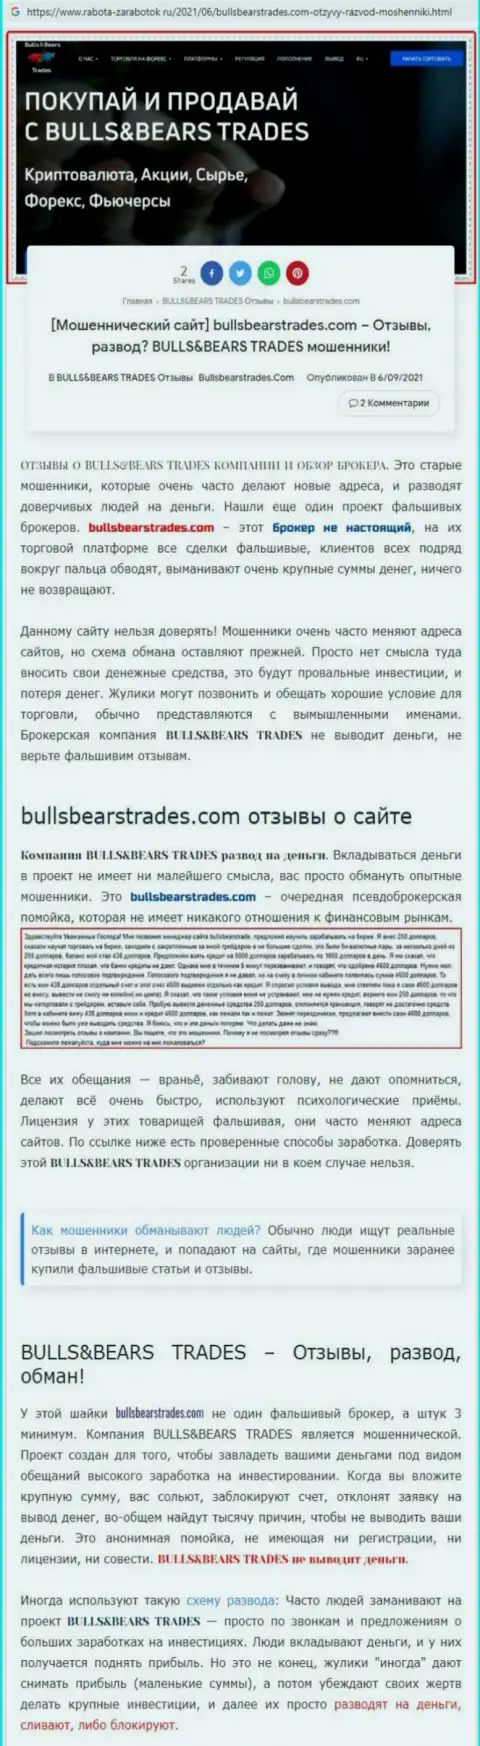 Обзор неправомерно действующей компании BullsBearsTrades Com про то, как накалывает наивных клиентов